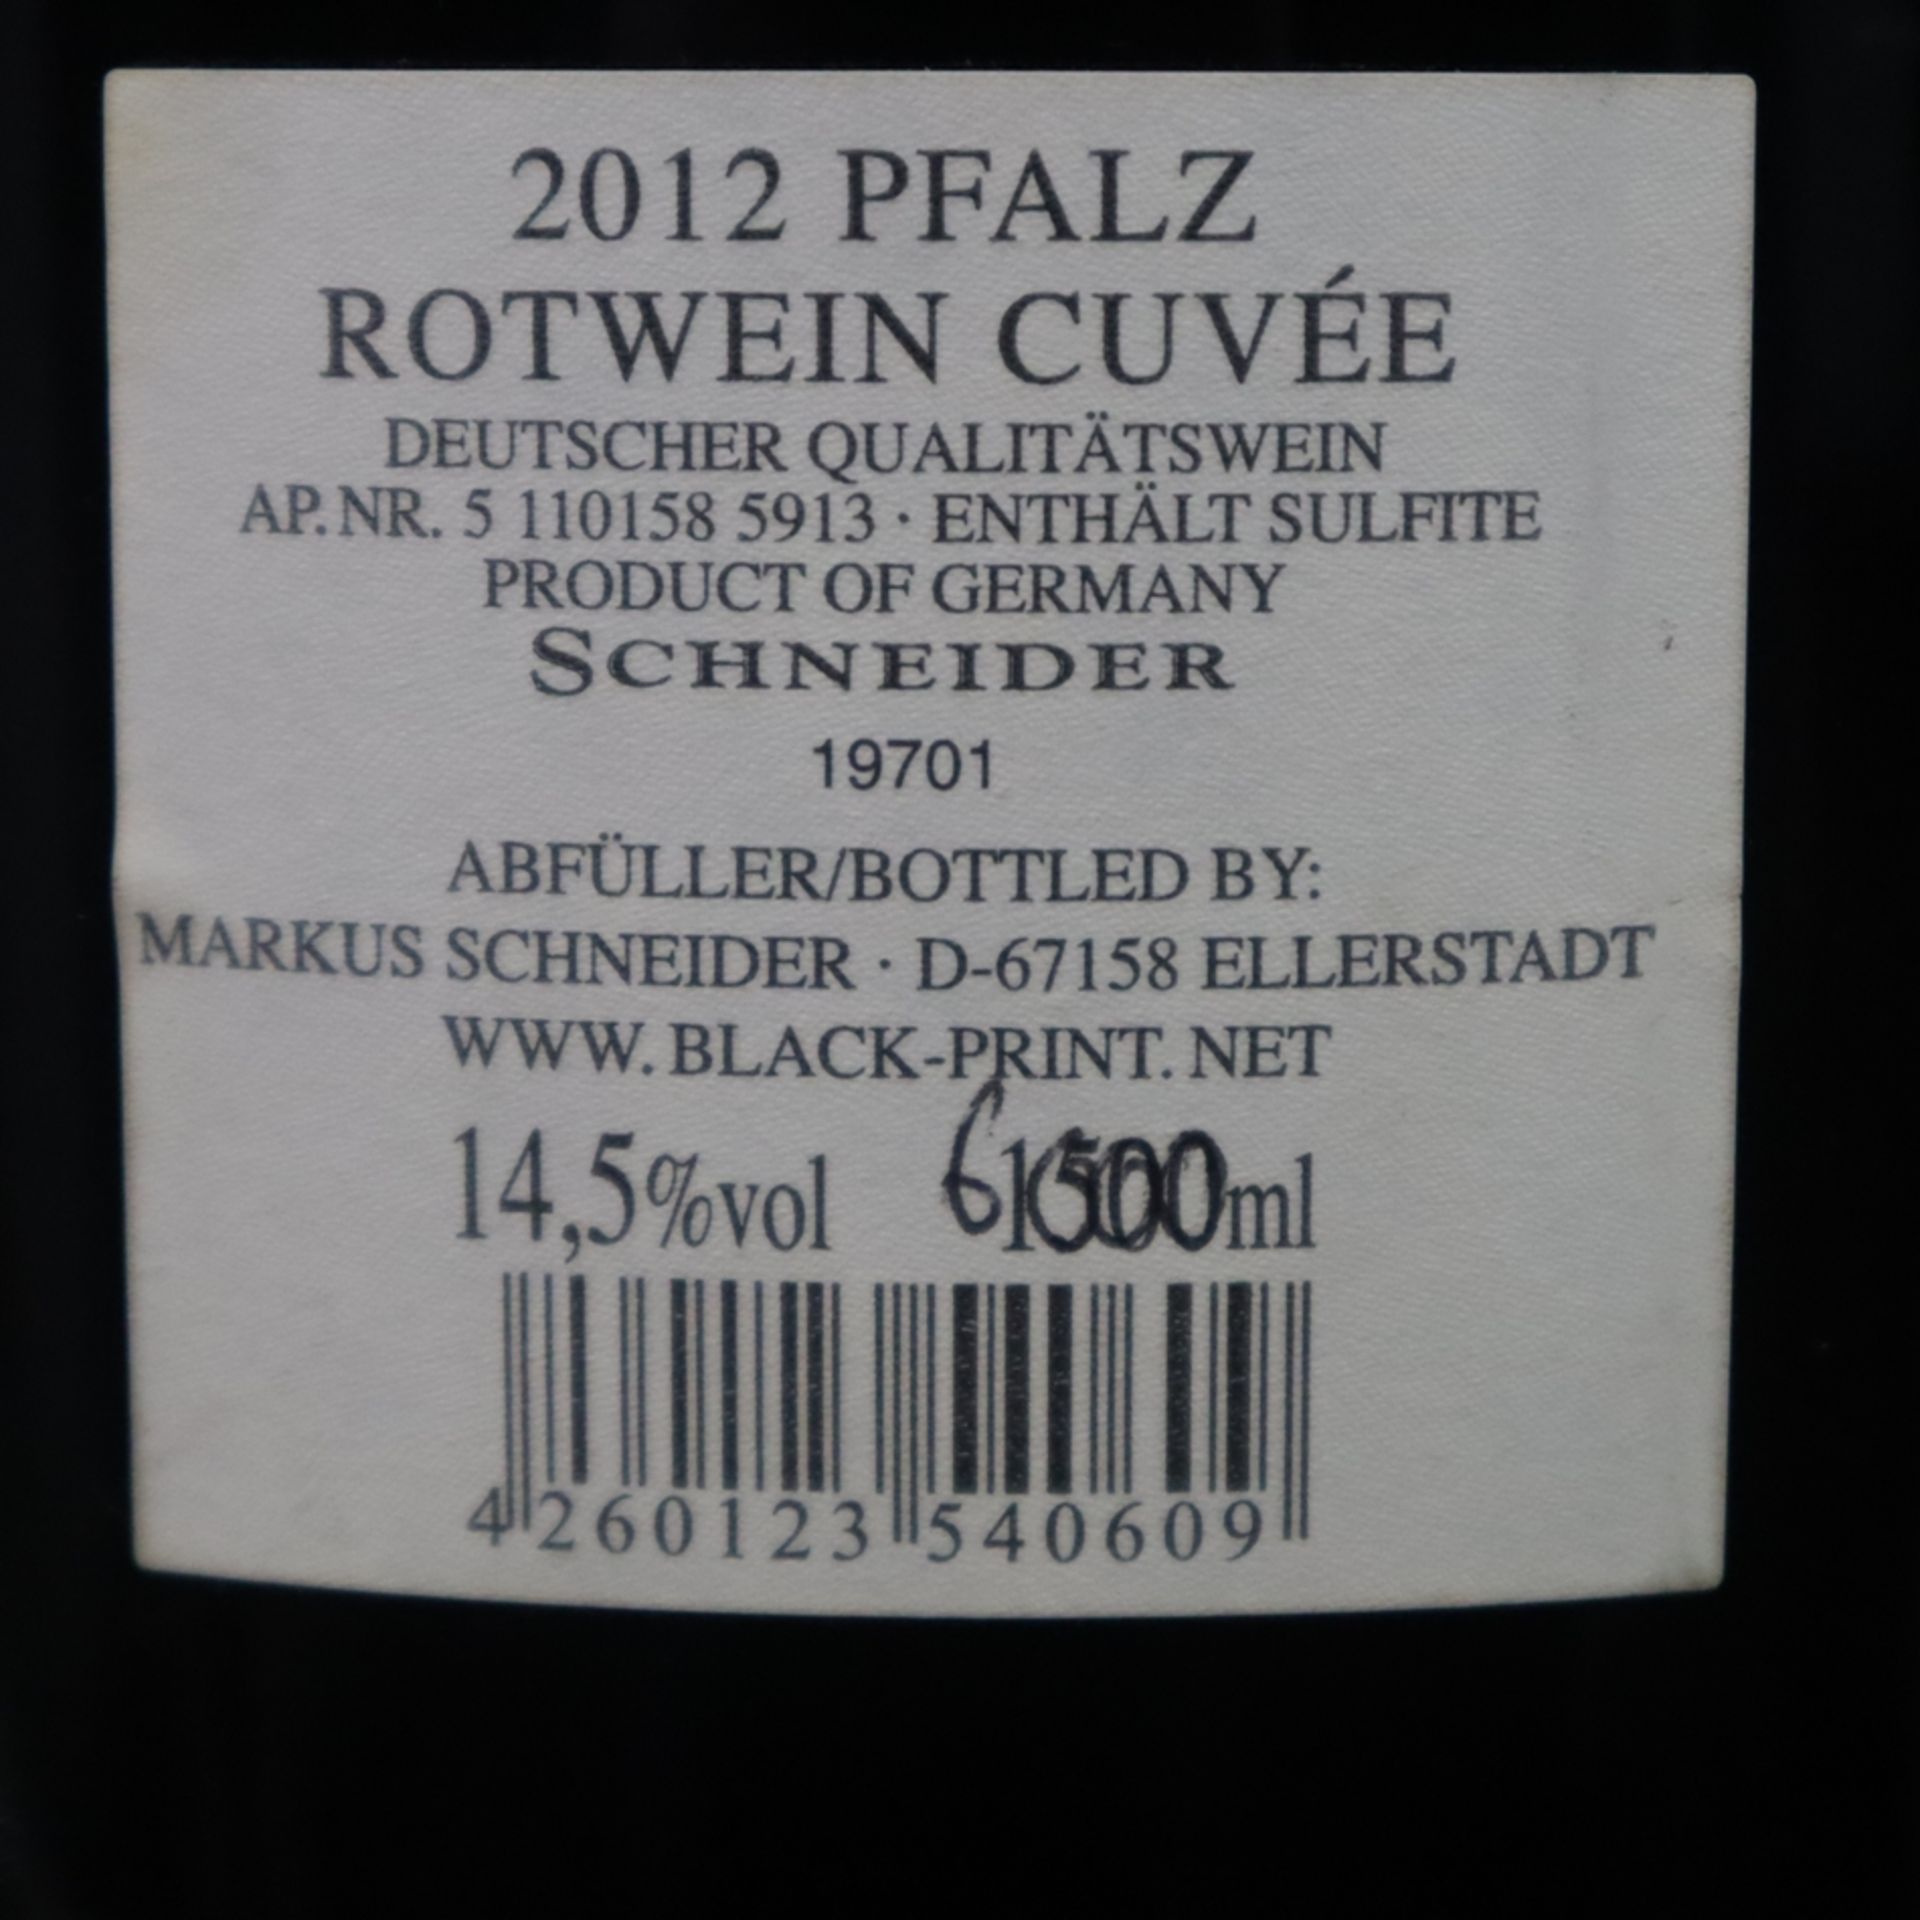 Wein - Markus Schneider Black Print, 2012 Pfalz Rotwein Cuvée, Deutschland, 14,5 %, Korkenverschlus - Image 4 of 4